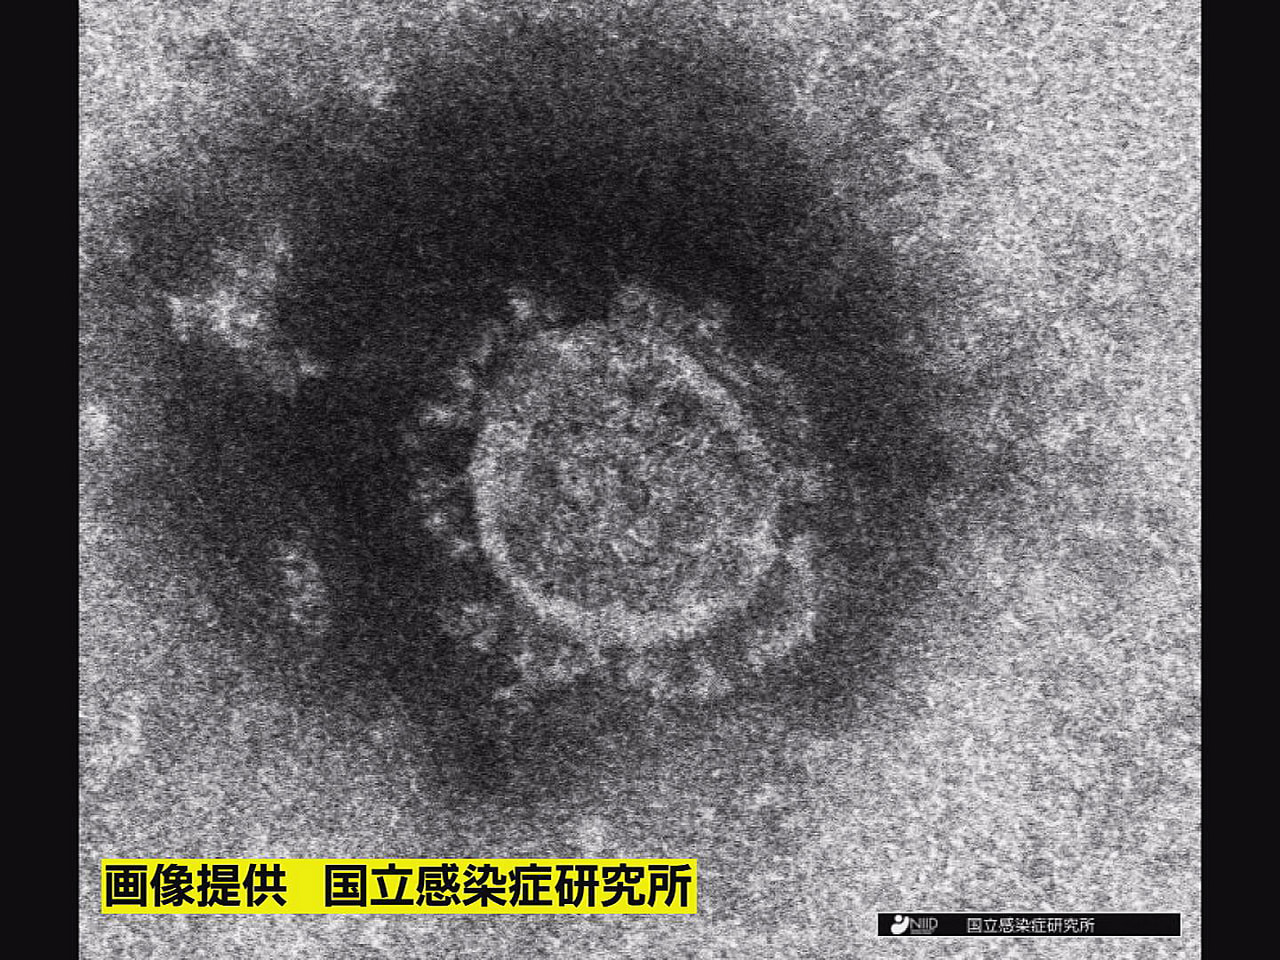 岐阜県は１８日、新型コロナウイルスの新規感染者が６１６人確認されたと発表しました...